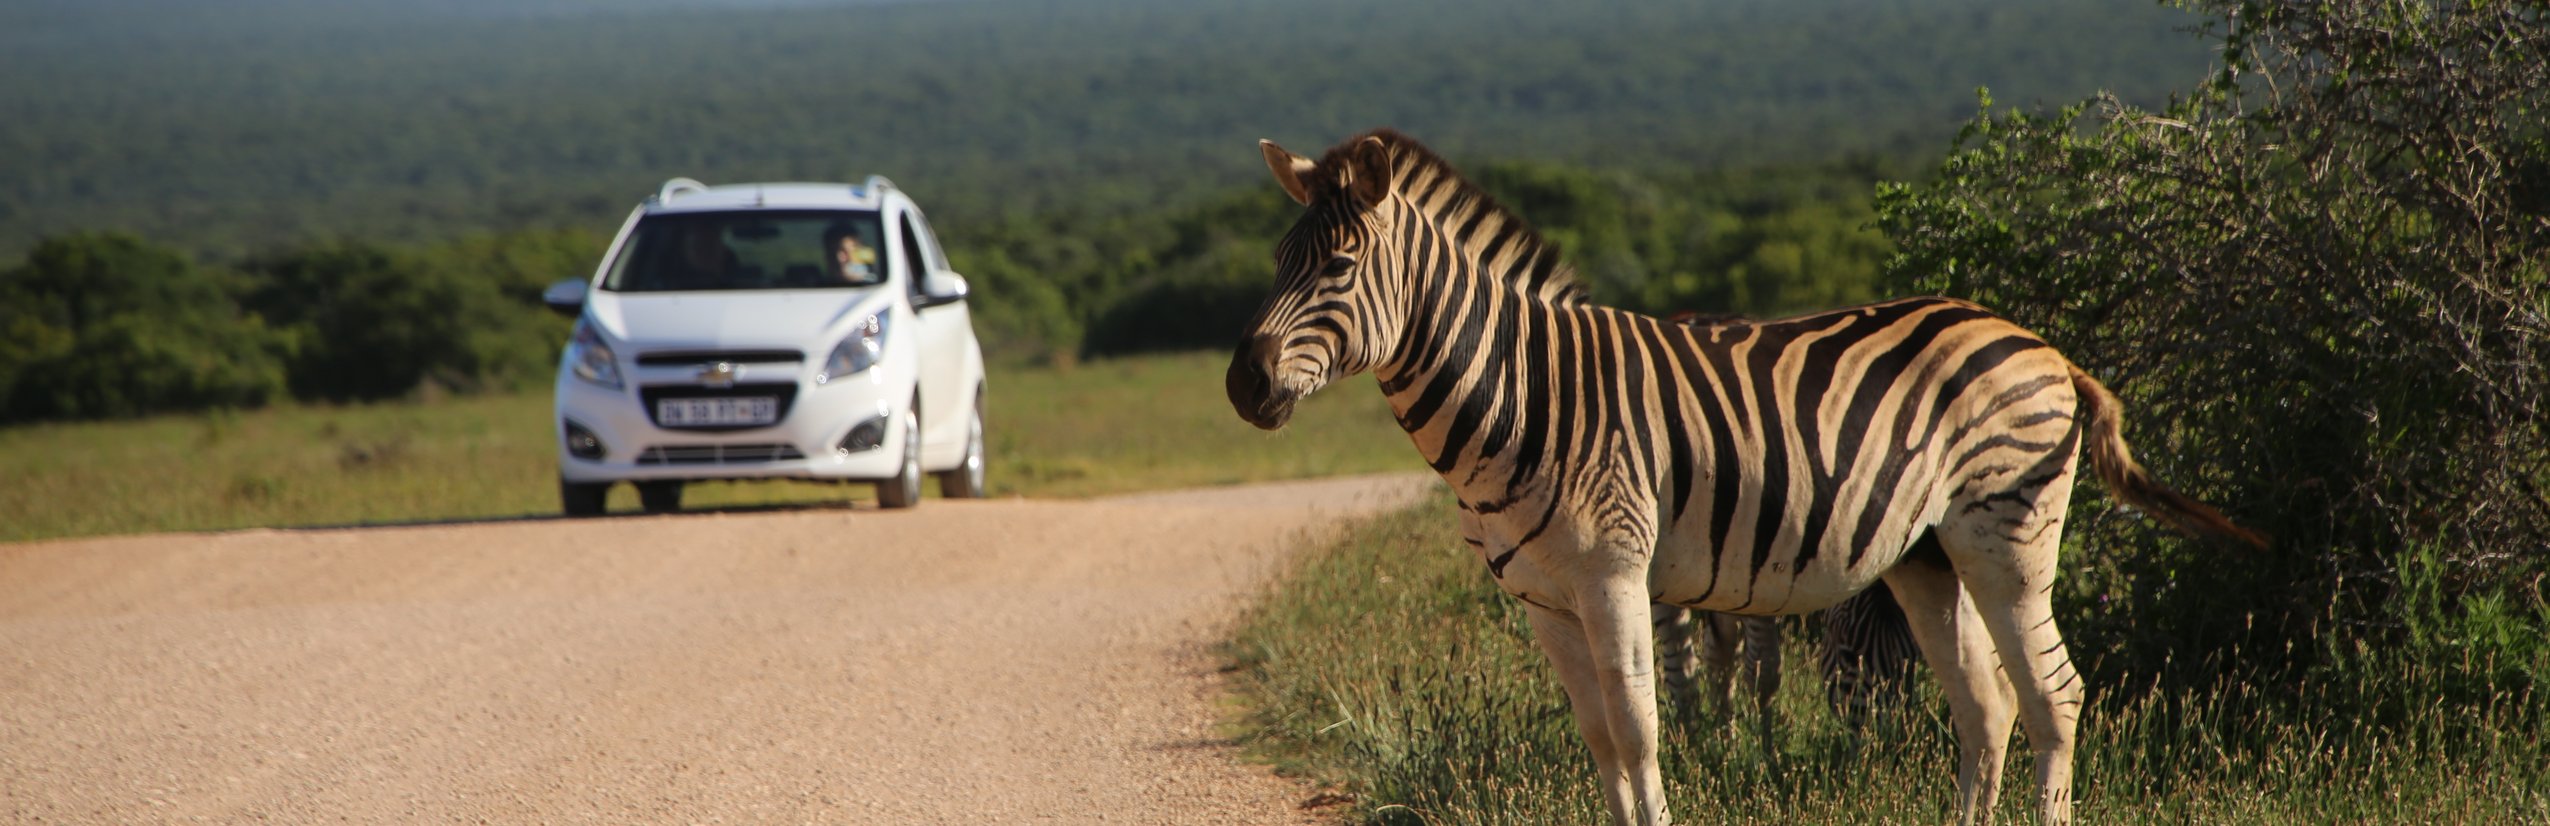 Garden Route mit Kleinkind - Elternzeit in Südafrika - Zebra nah am Auto